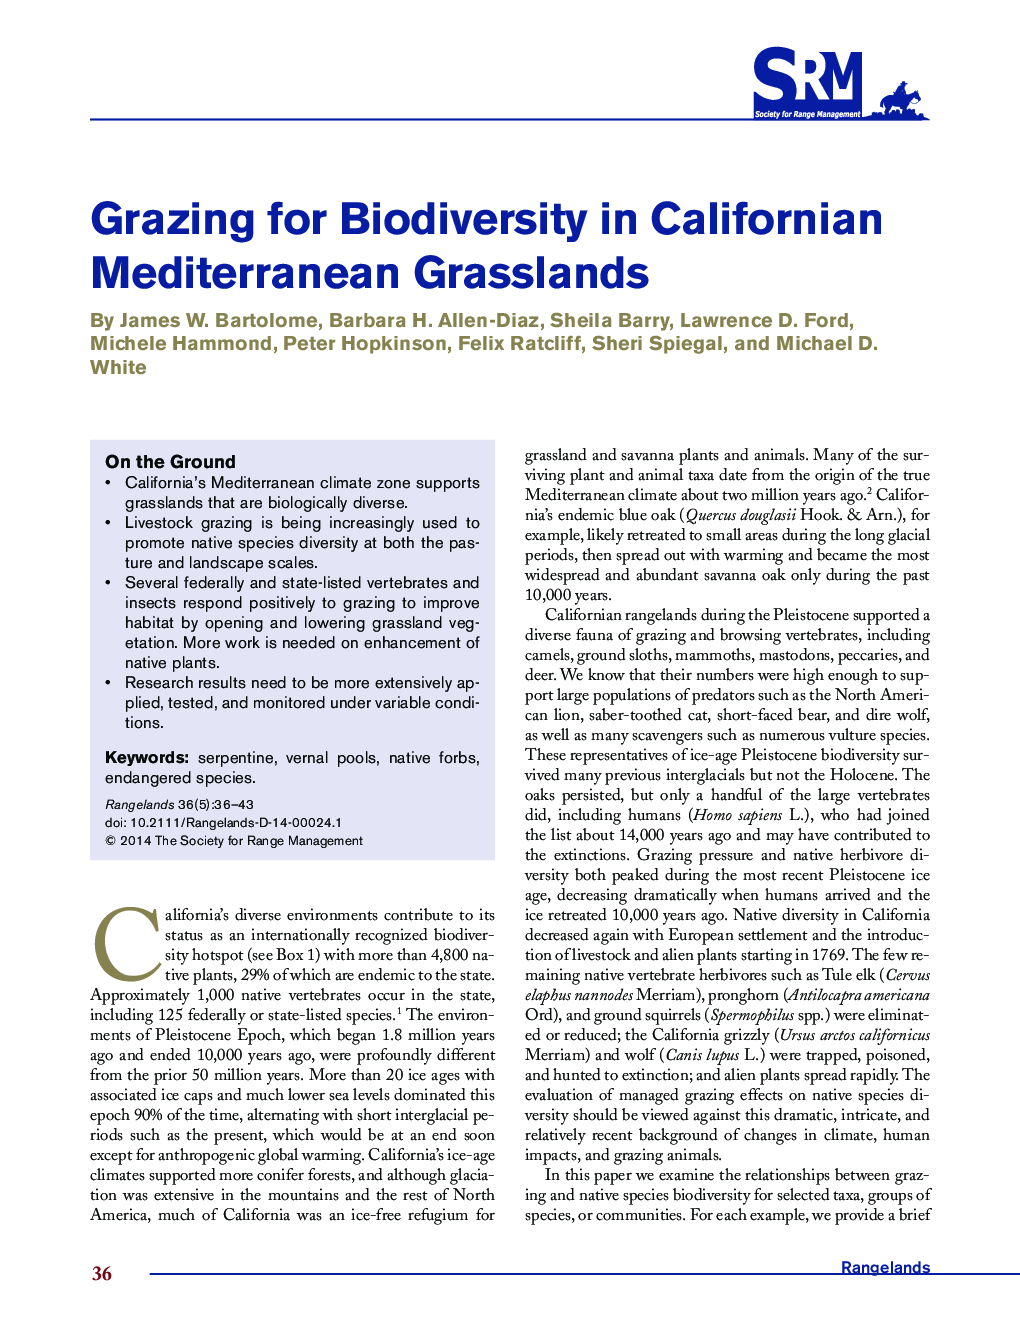 Grazing for Biodiversity in Californian Mediterranean Grasslands